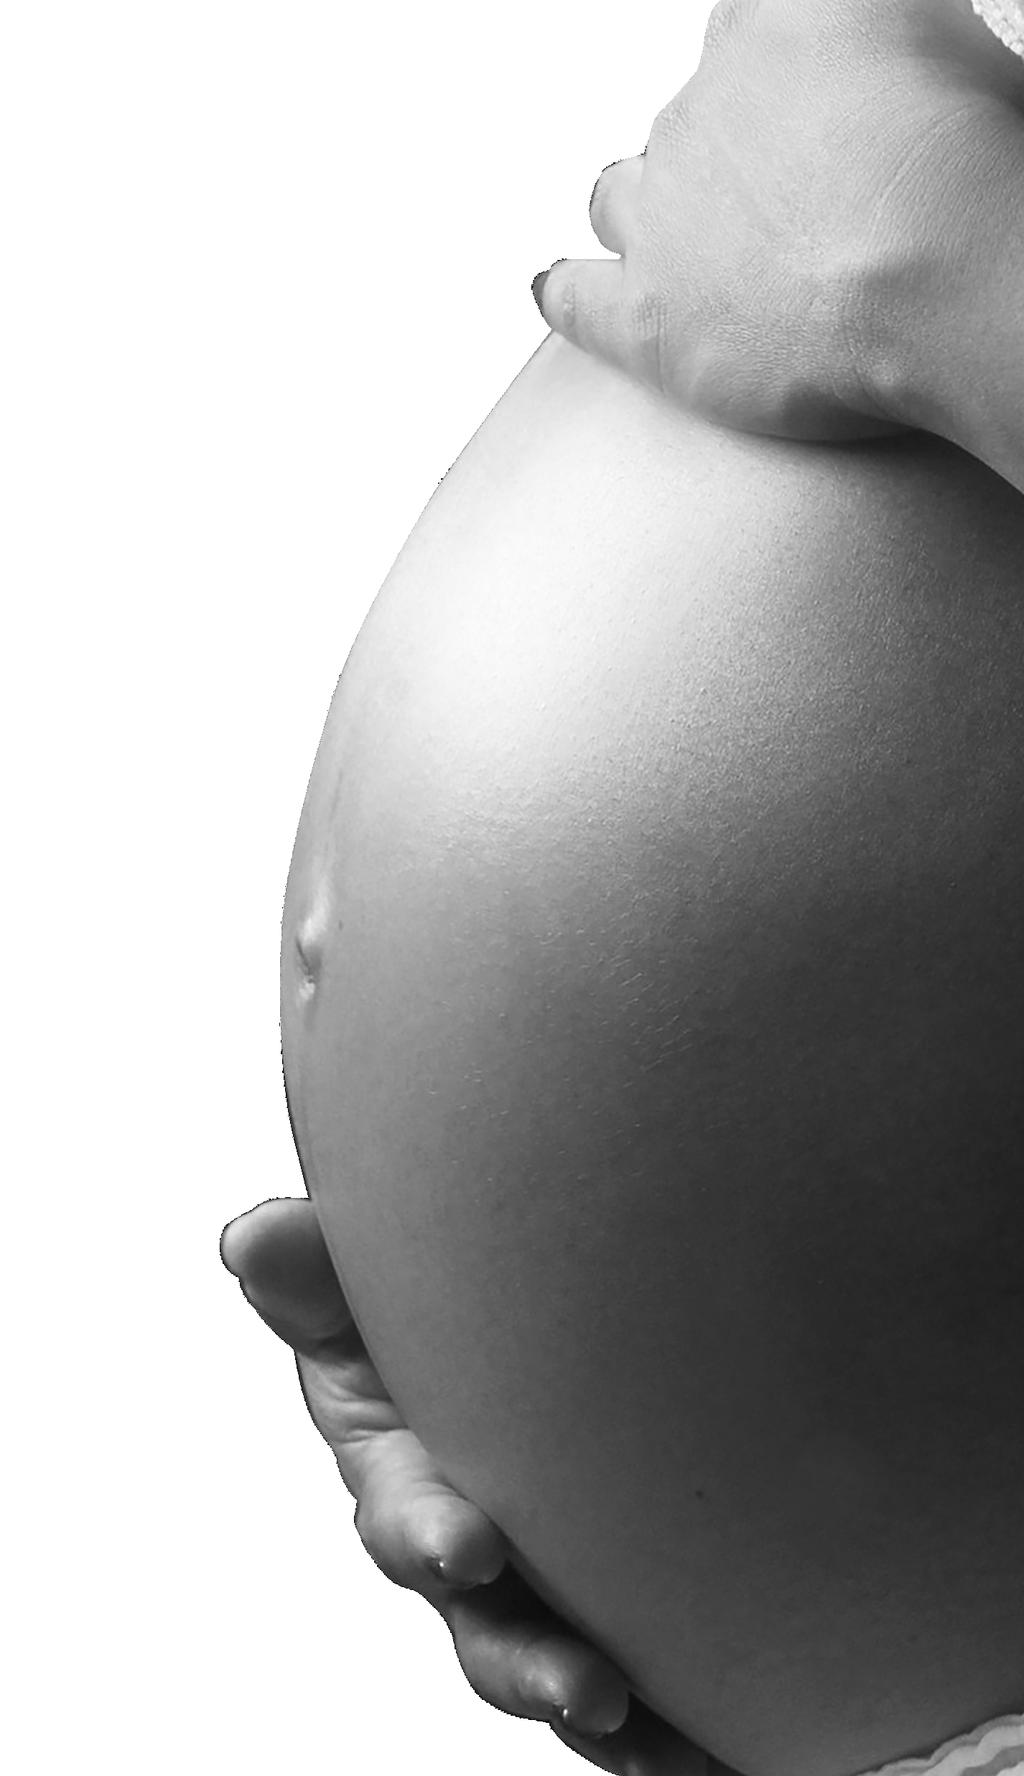 Hittills har behandling med TNF-hämmare under graviditet varit omdebatterat, men i såväl nationella som internationella riktlinjer går trenden mot ett alltmer liberalt användande, särskilt vid